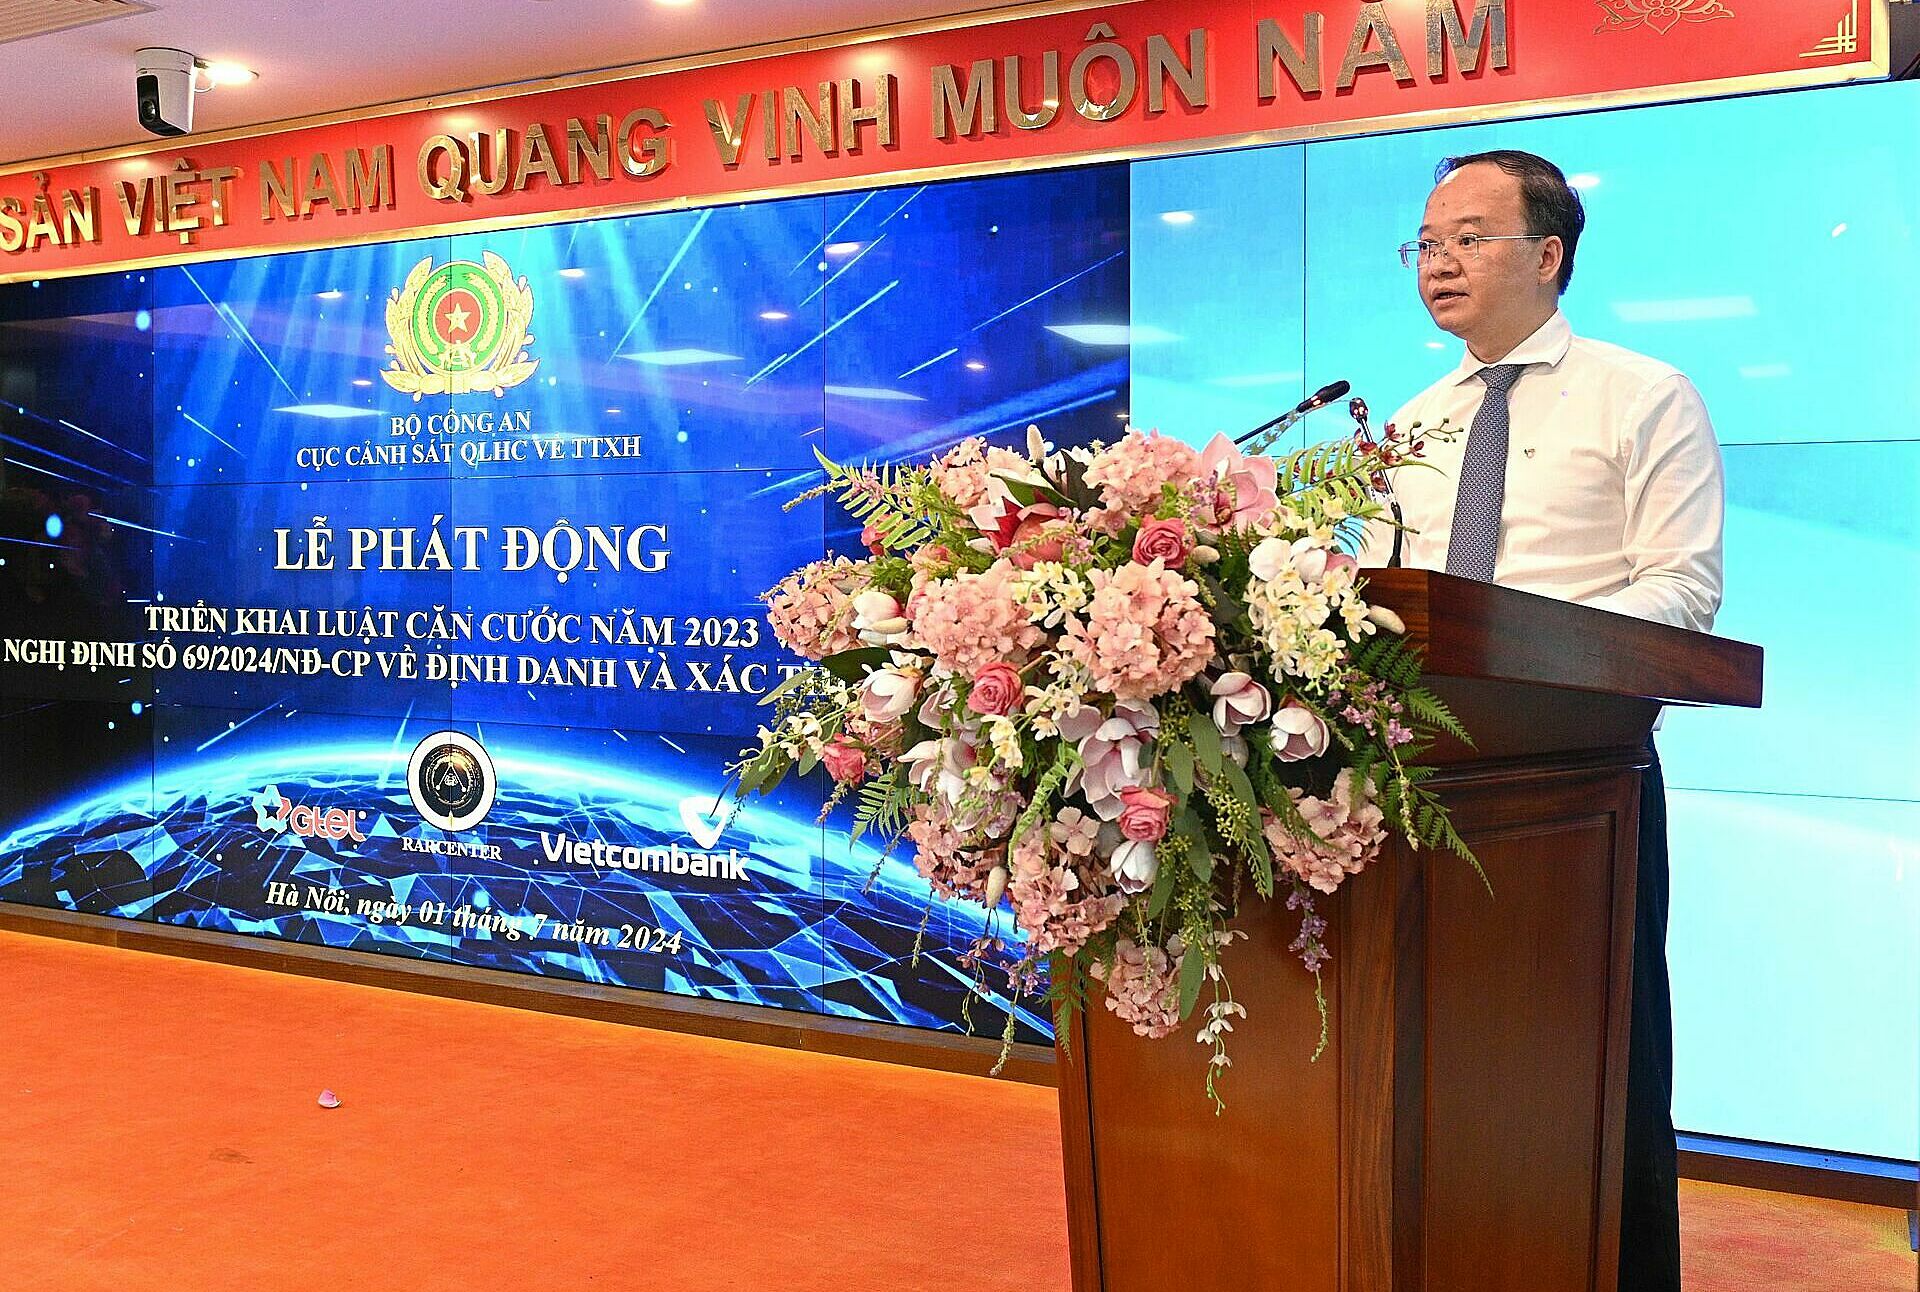 Ông Lê Quang Vinh - Phó Tổng Giám đốc Vietcombank phát biểu tại buổi lễ. Ảnh: Vietcombank